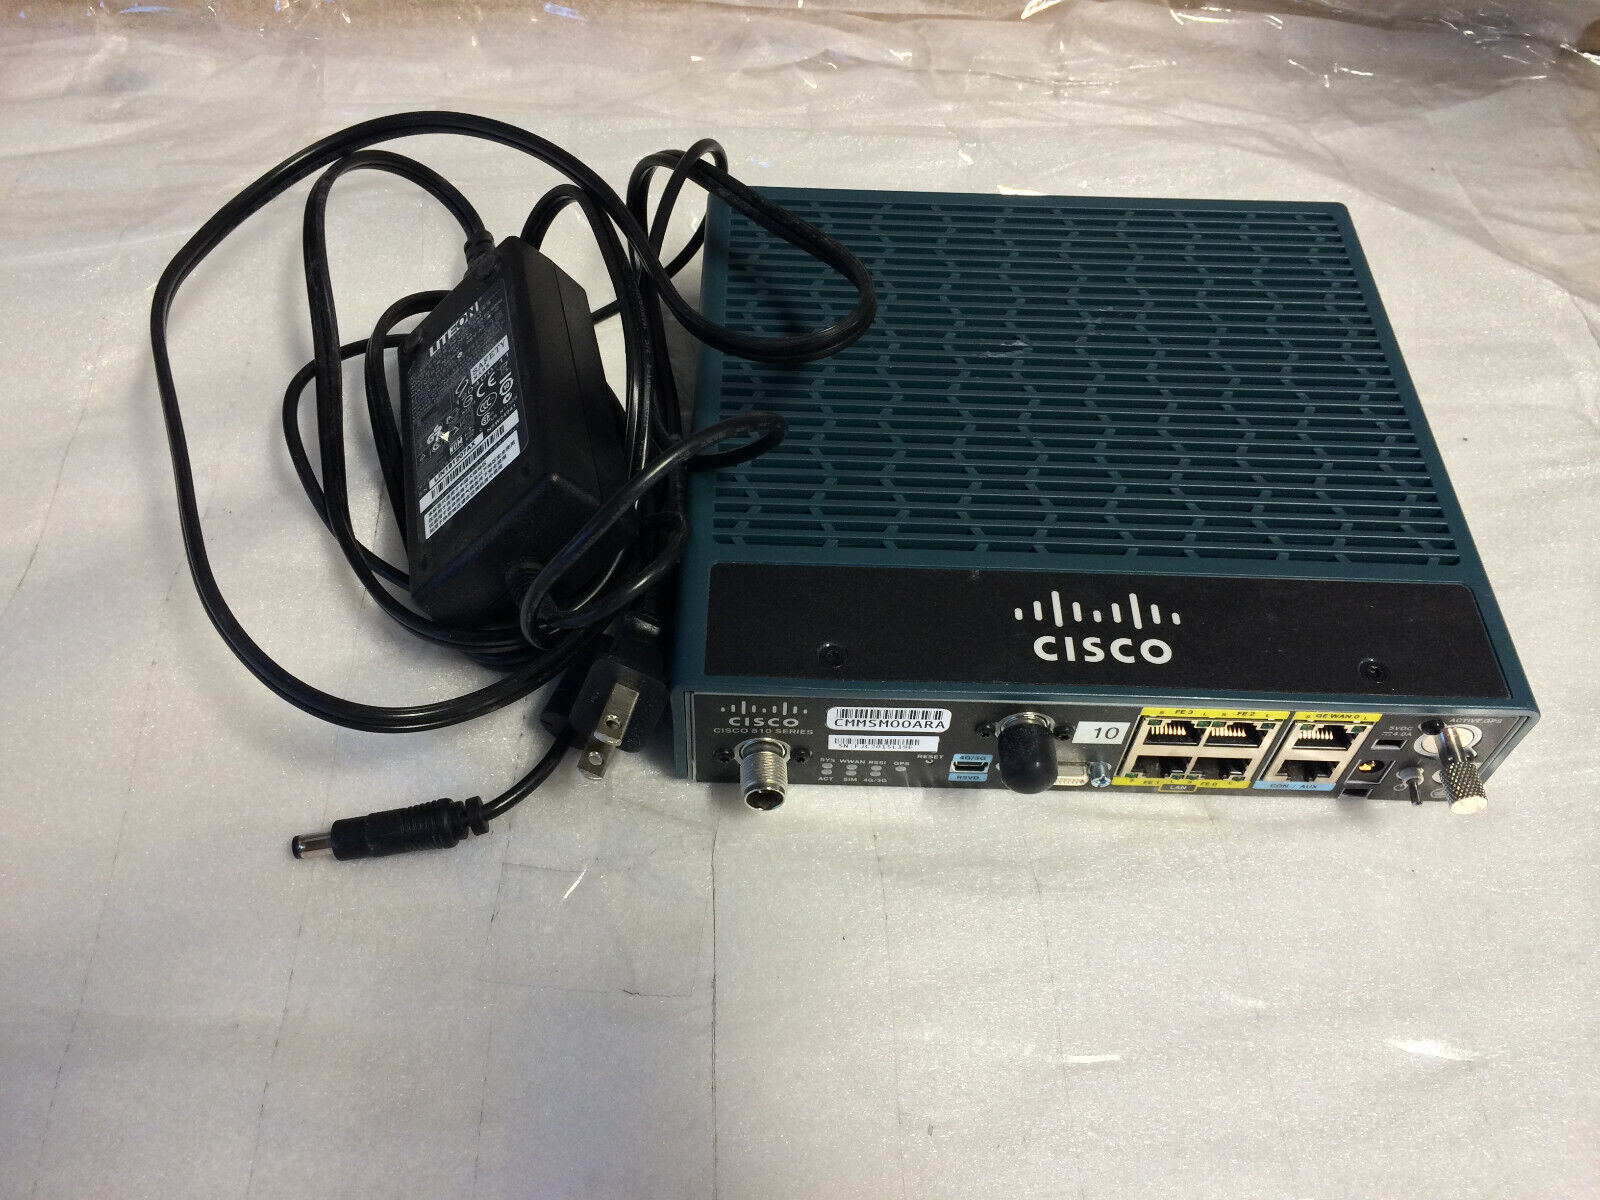 Cisco 819-4G Router C819G-4G-NA-K9